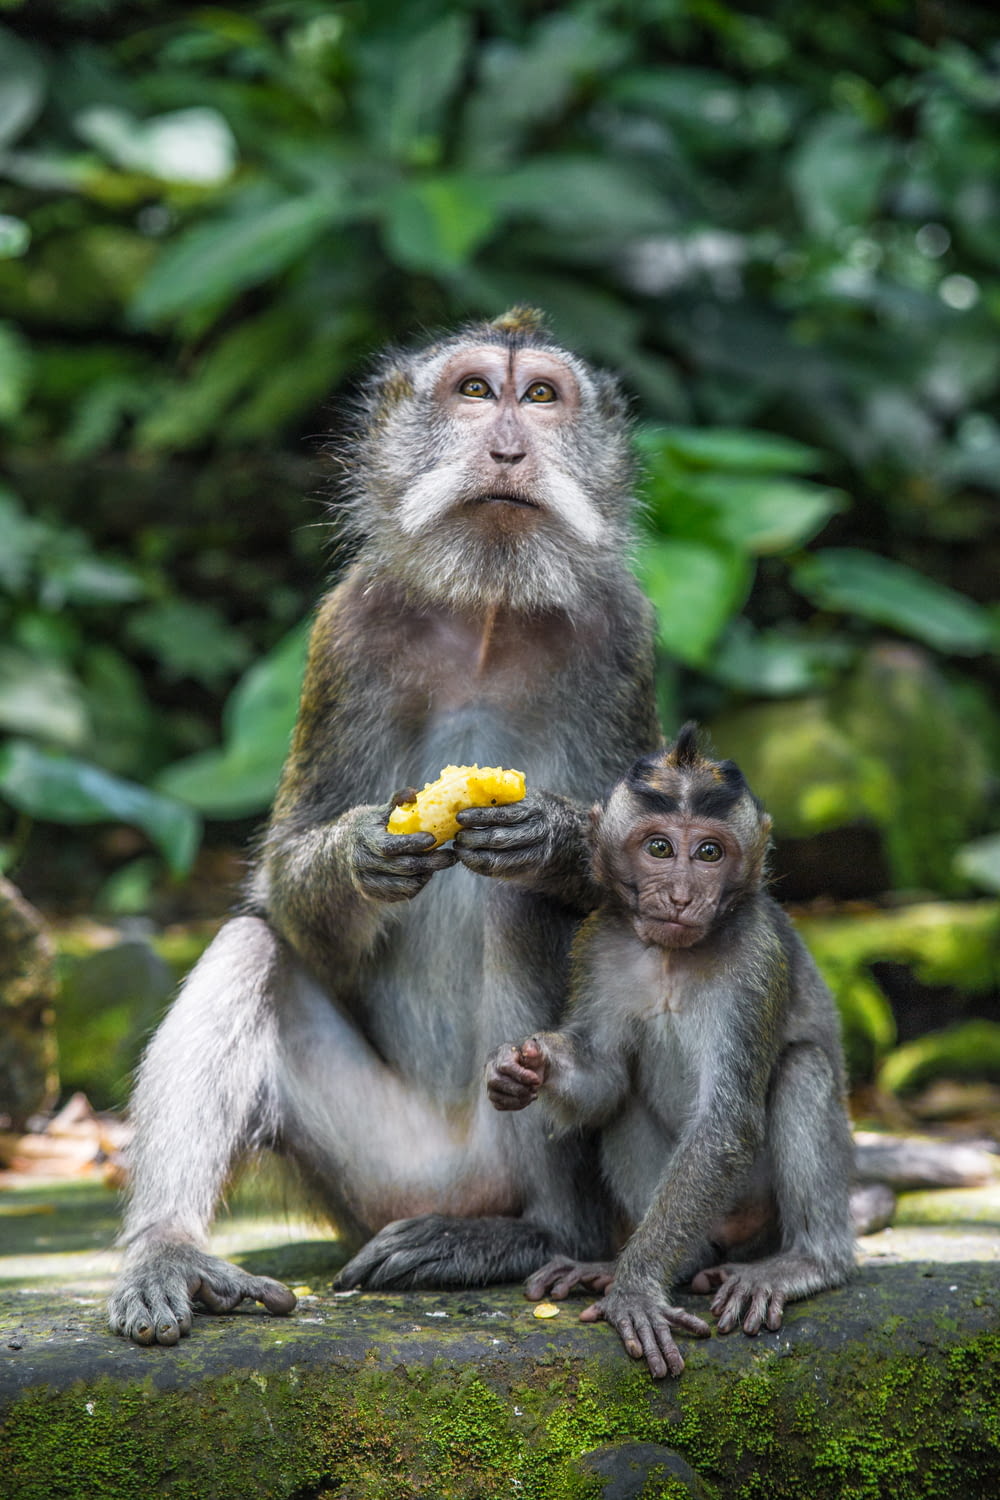 brown monkey eating banana during daytime